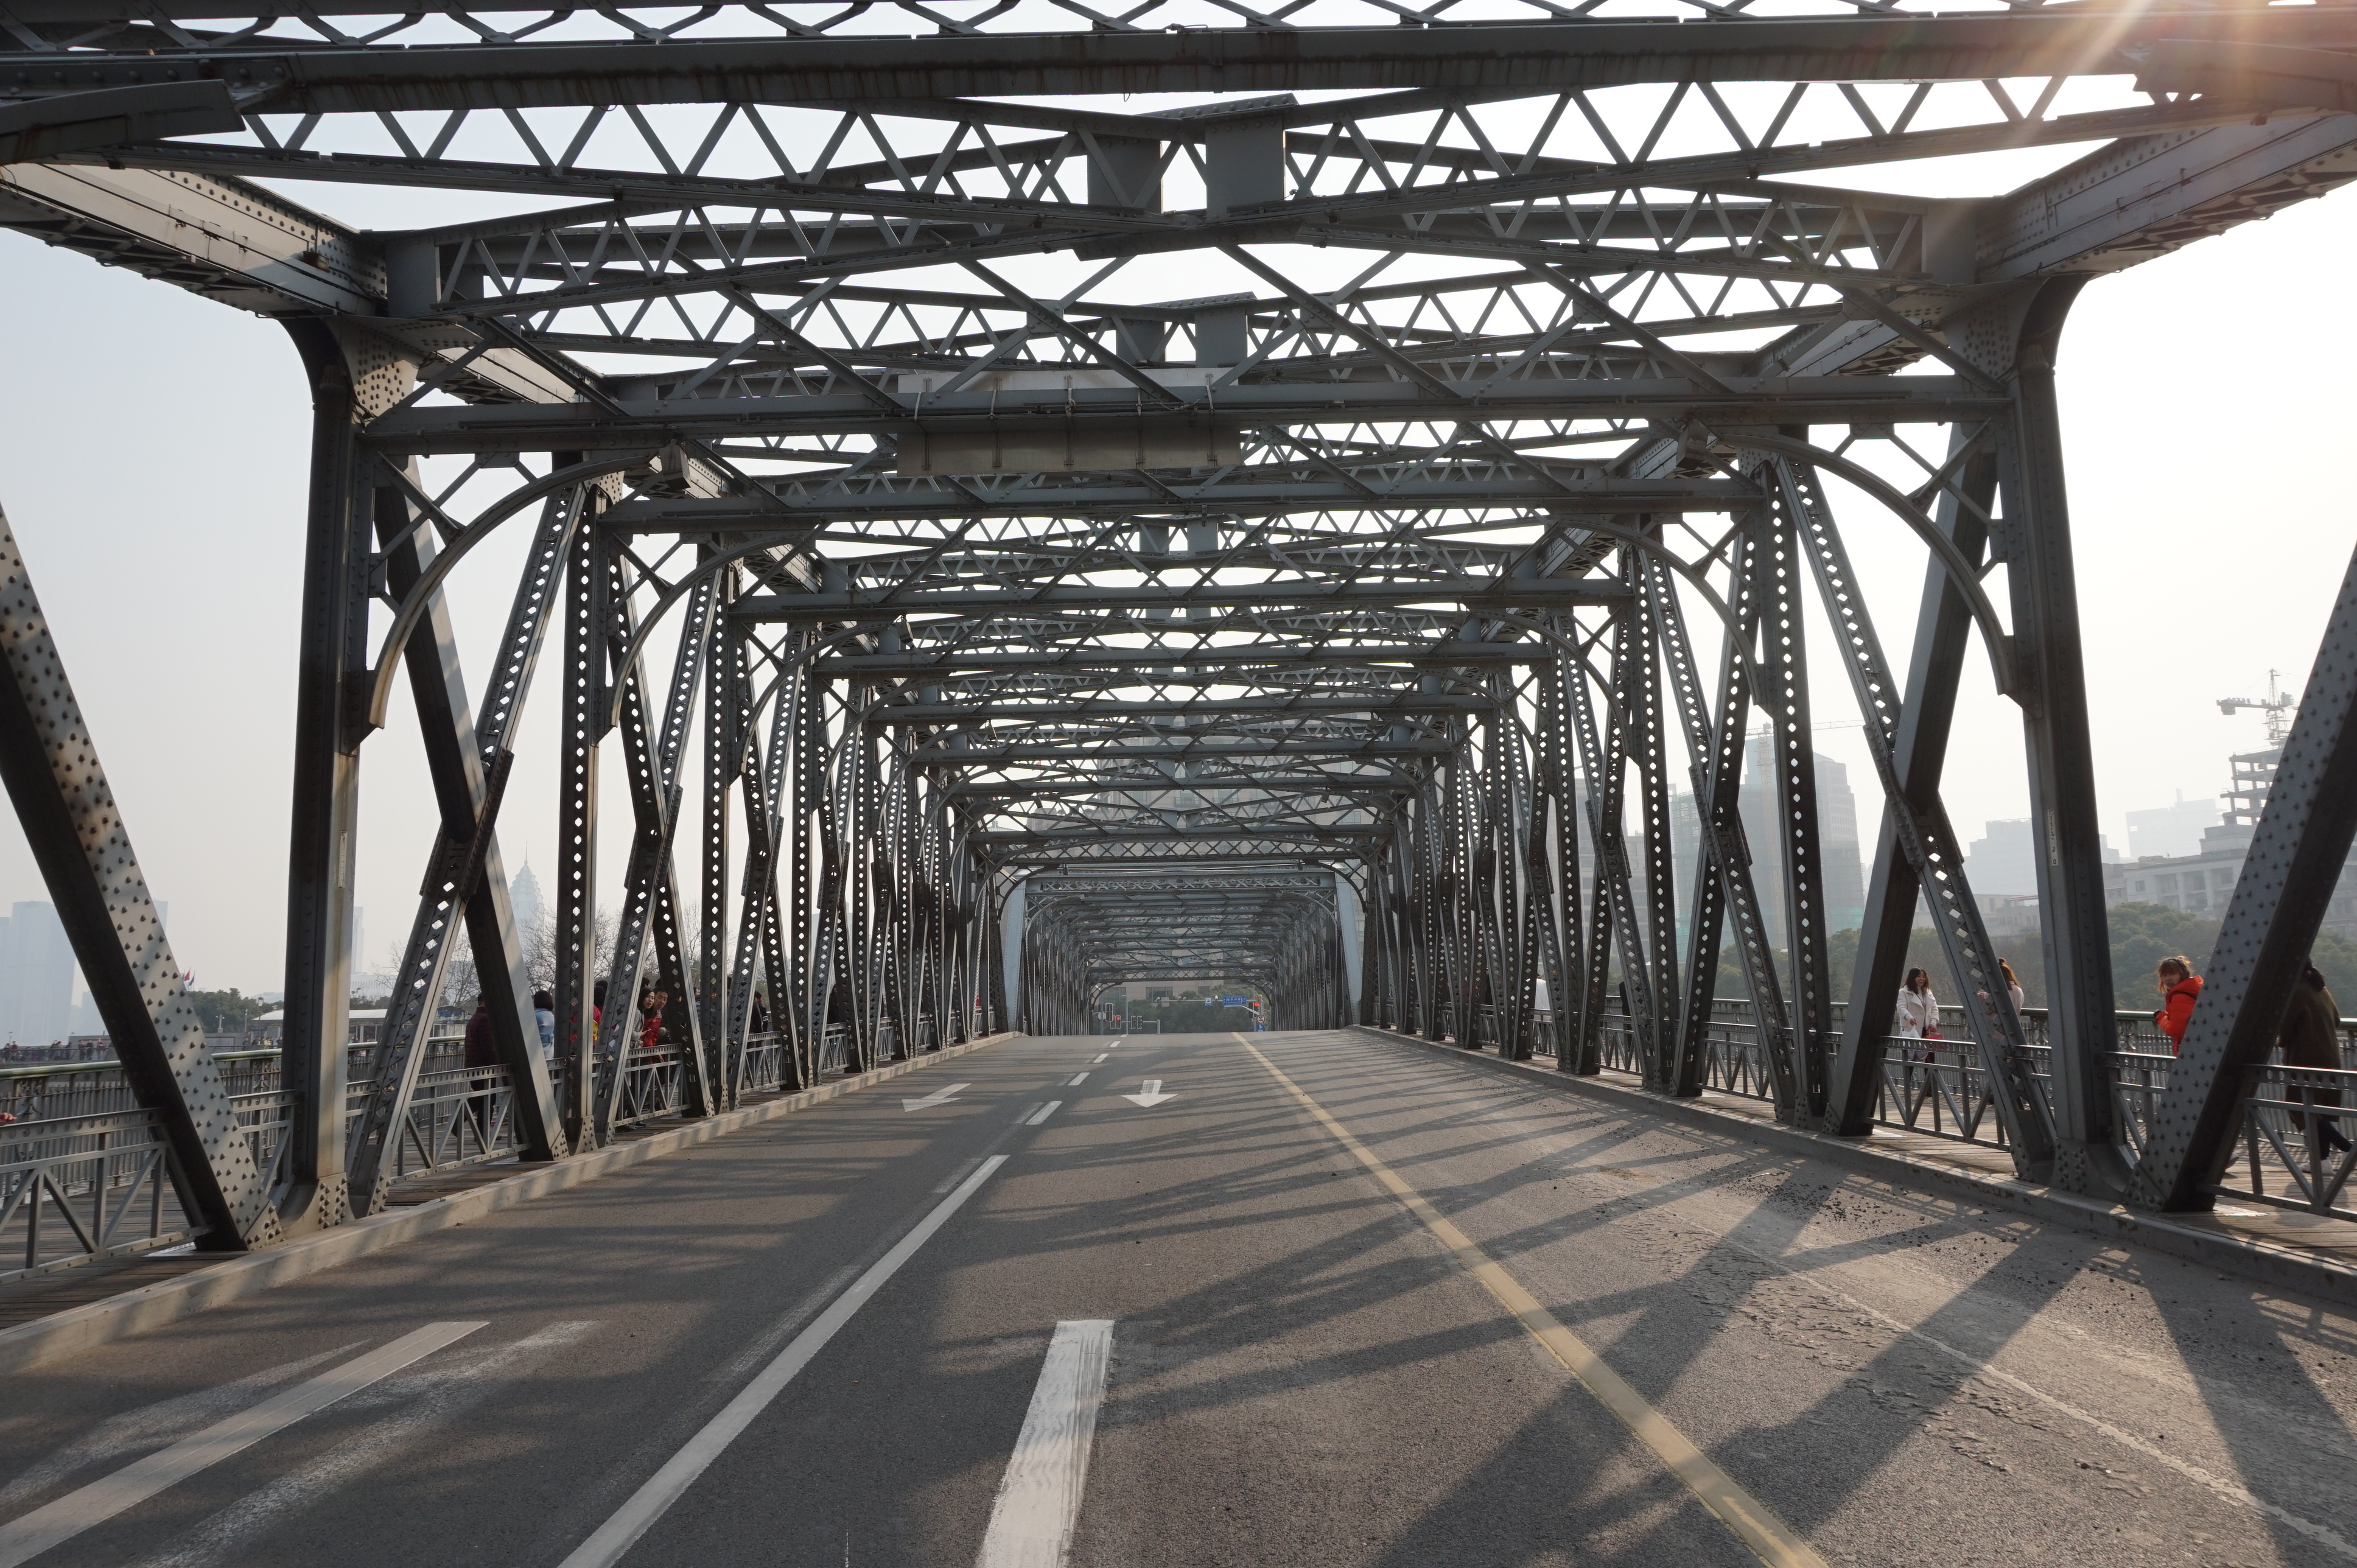 外白渡桥是上海一座历史悠久,横跨苏州河的桥梁,链接的是上海外滩区域